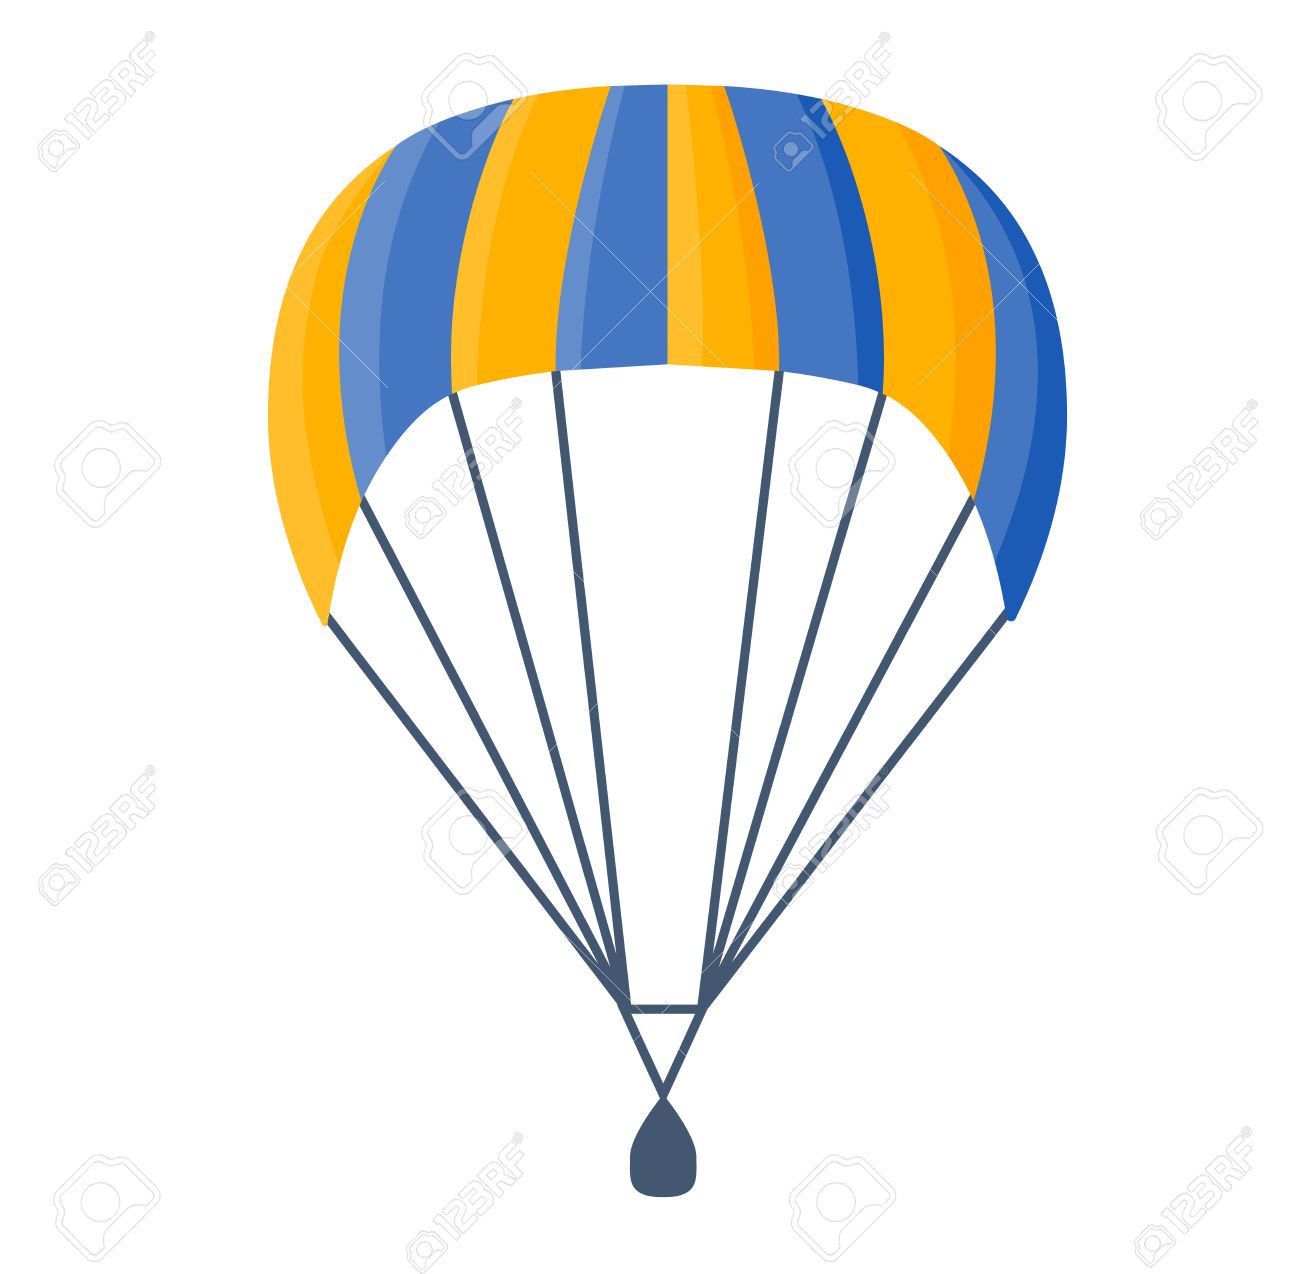 parachute clipart cartoon